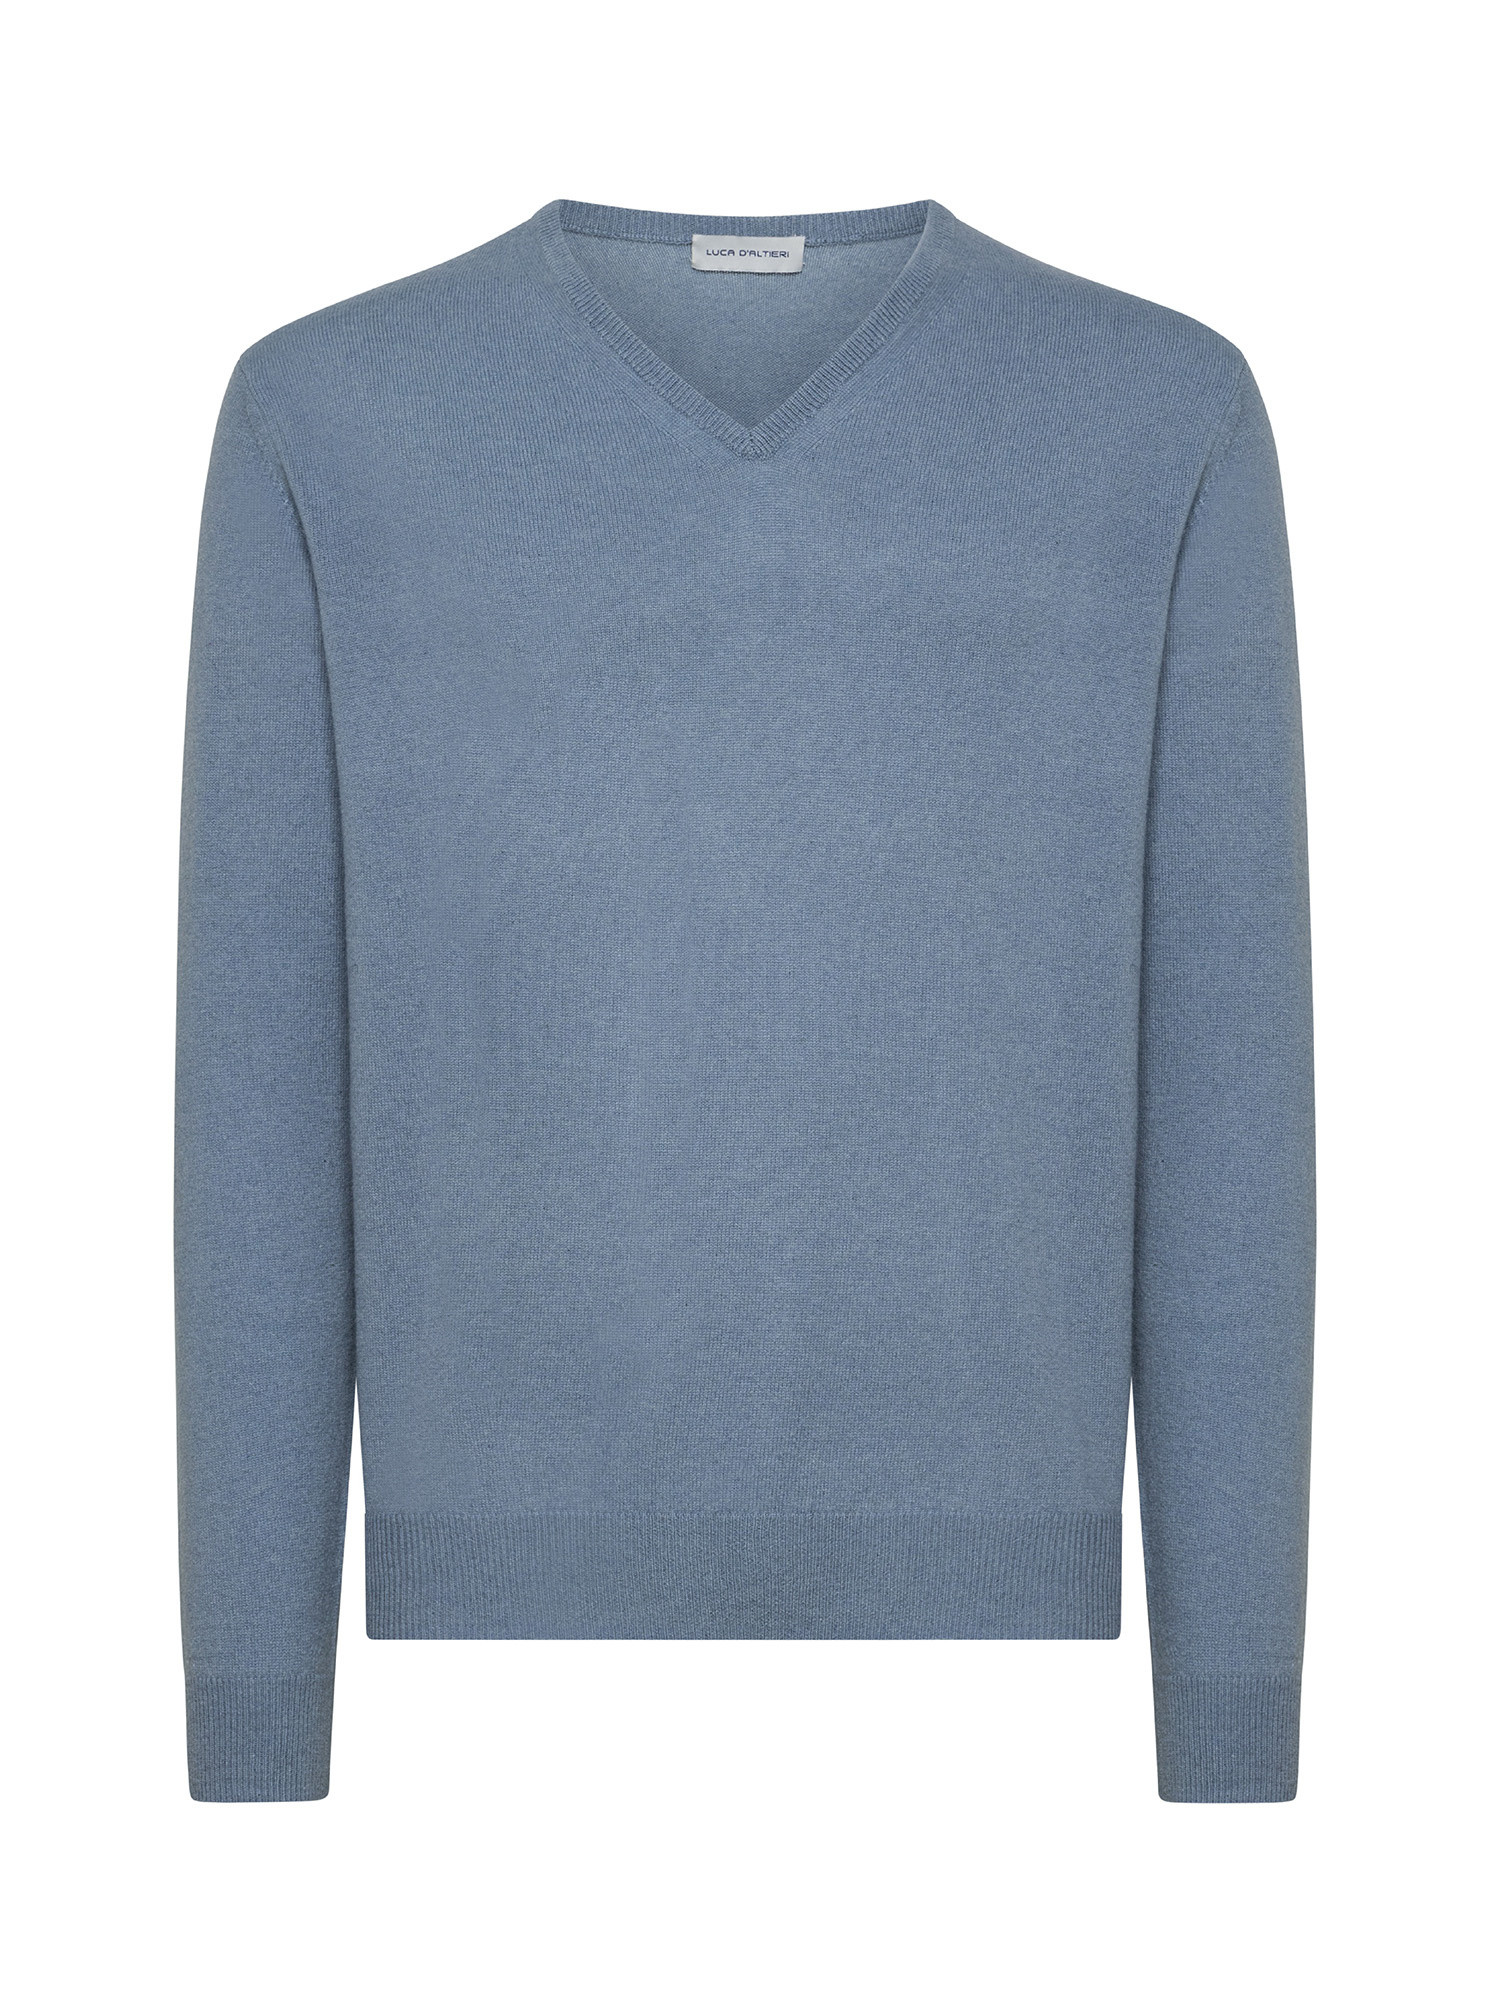 Пуловер с V-образным вырезом из чистого кашемира Luca D'Altieri, голубой пуловер с v образным вырезом из льна